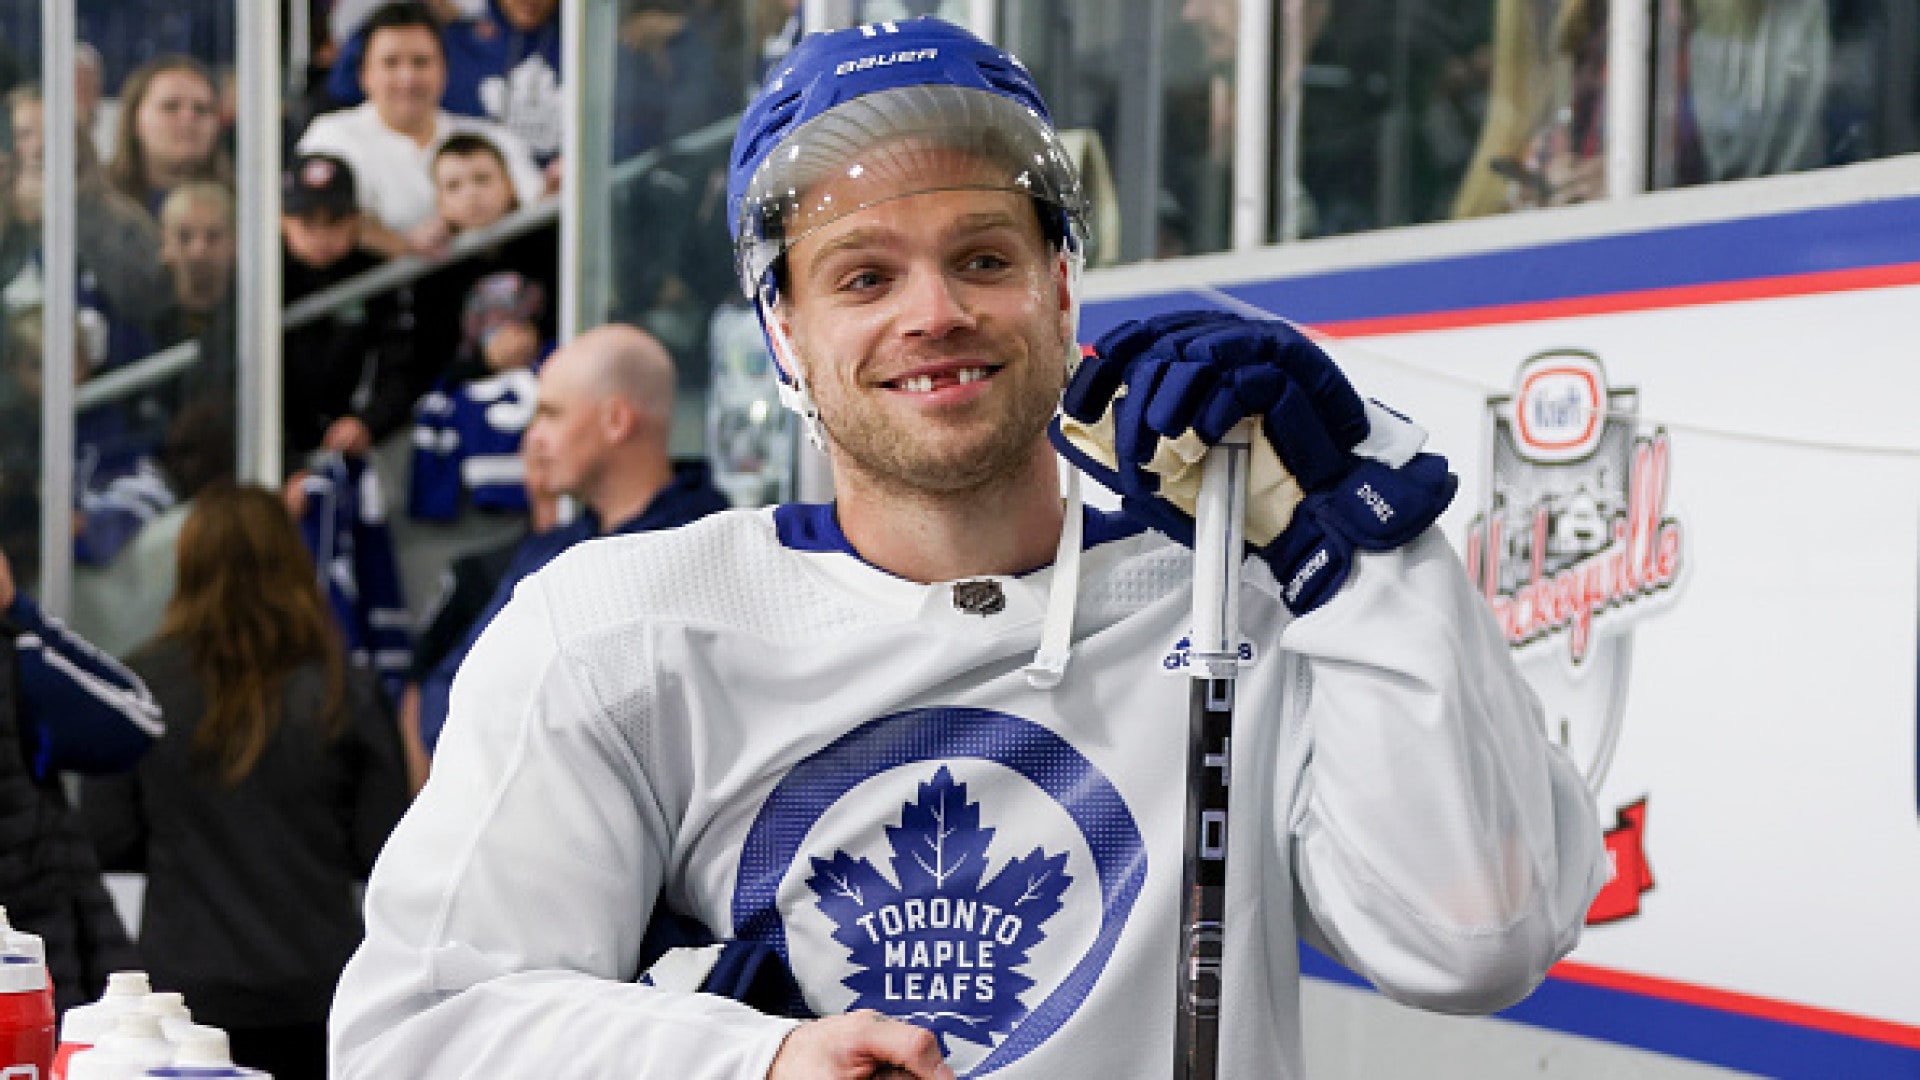 Matthews' hat trick helps Maple Leafs earn comeback win over Devils